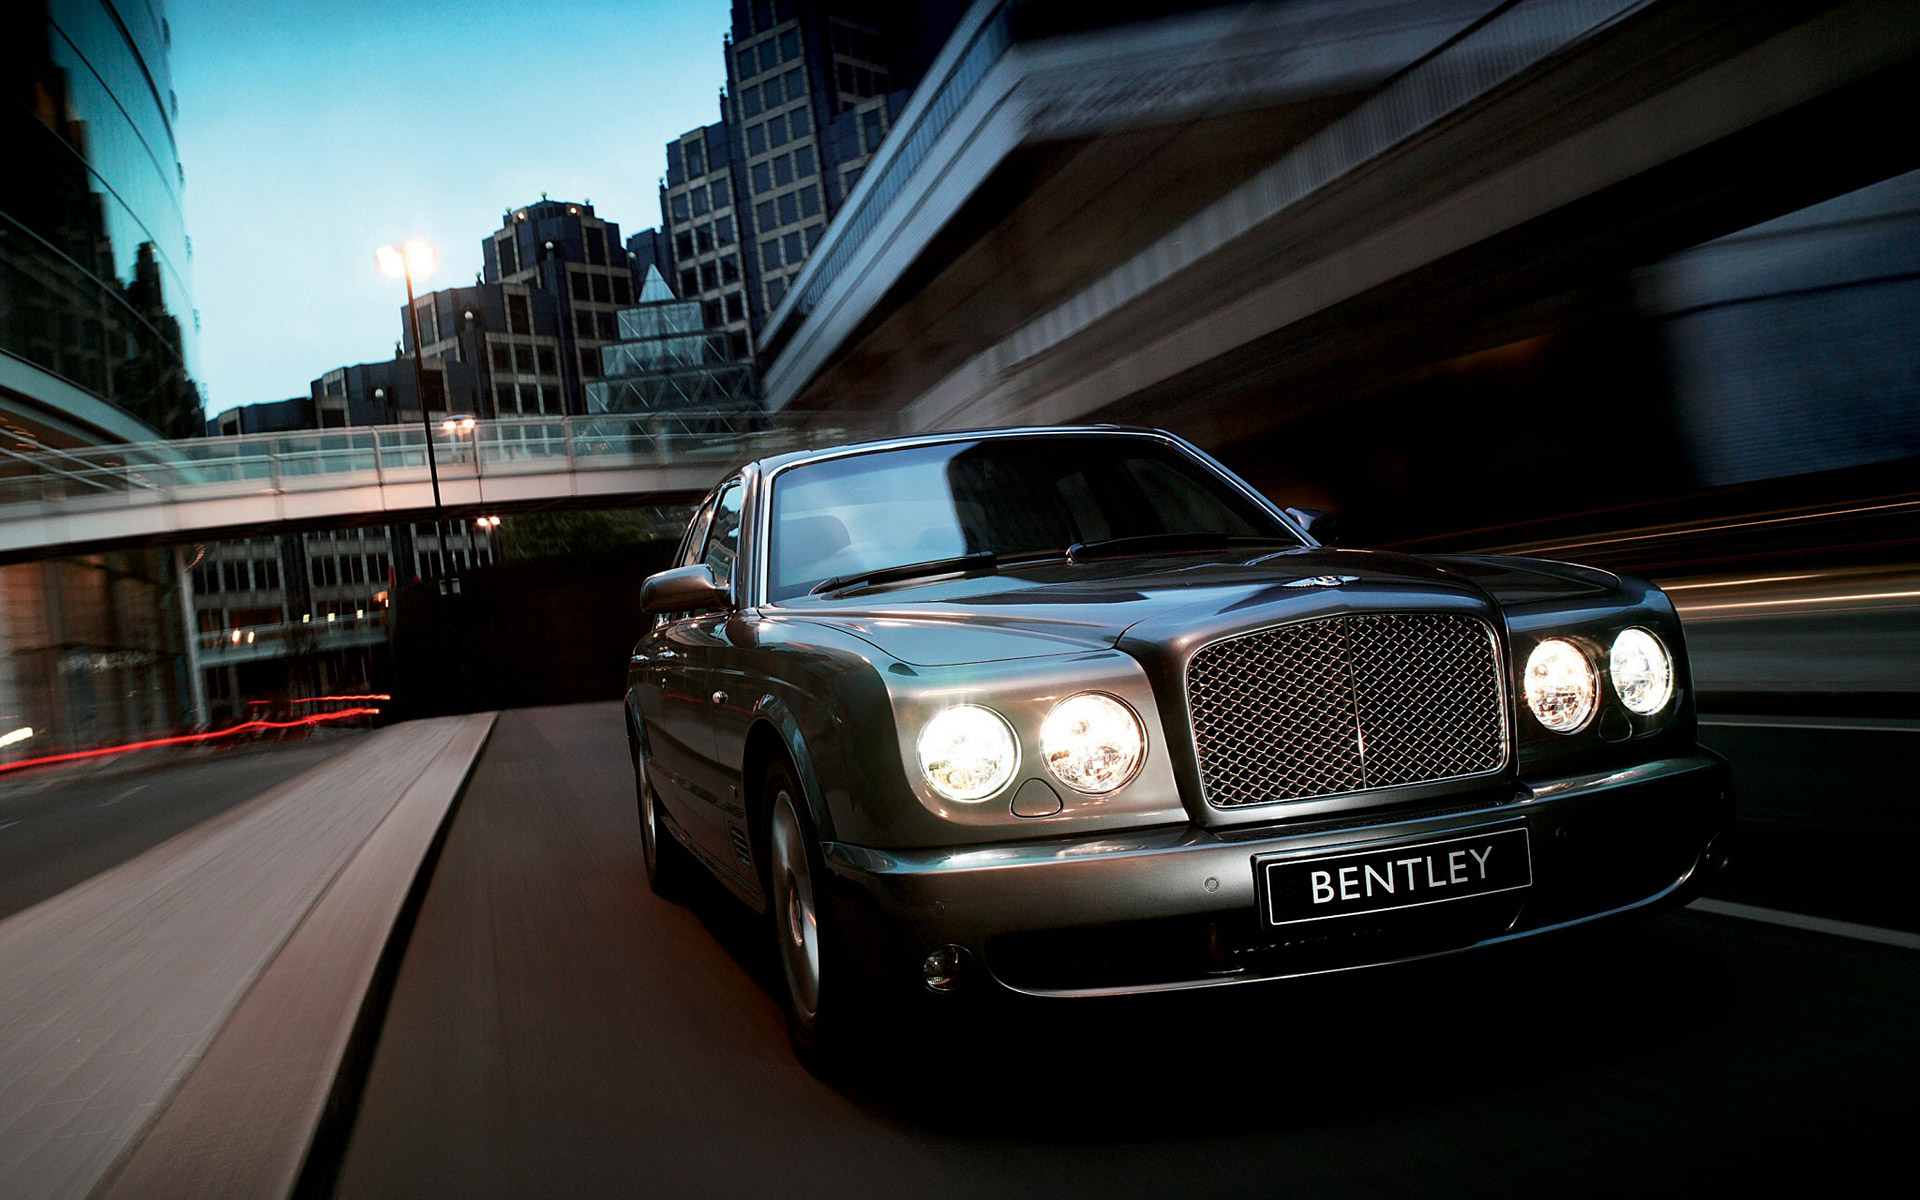  2007 Bentley Arnage Wallpaper.